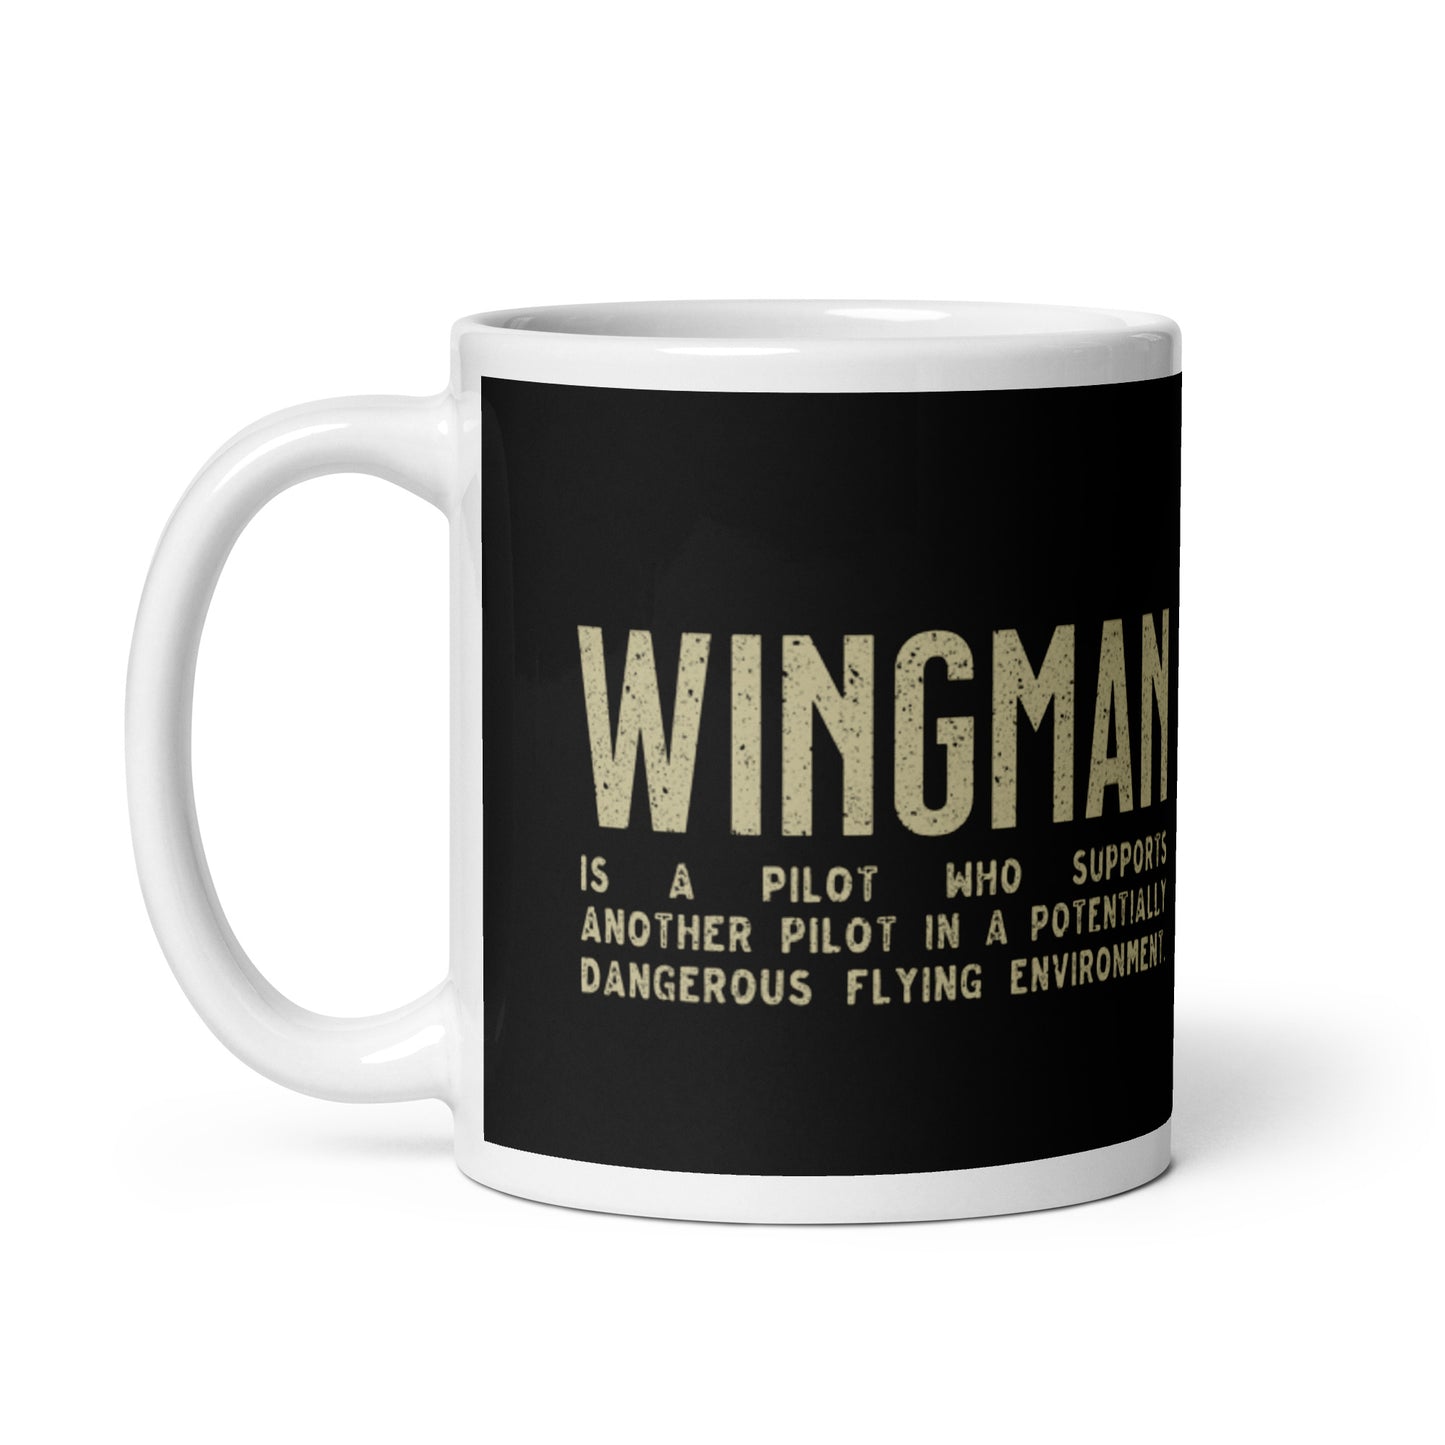 The Wingman Motorcycle mug